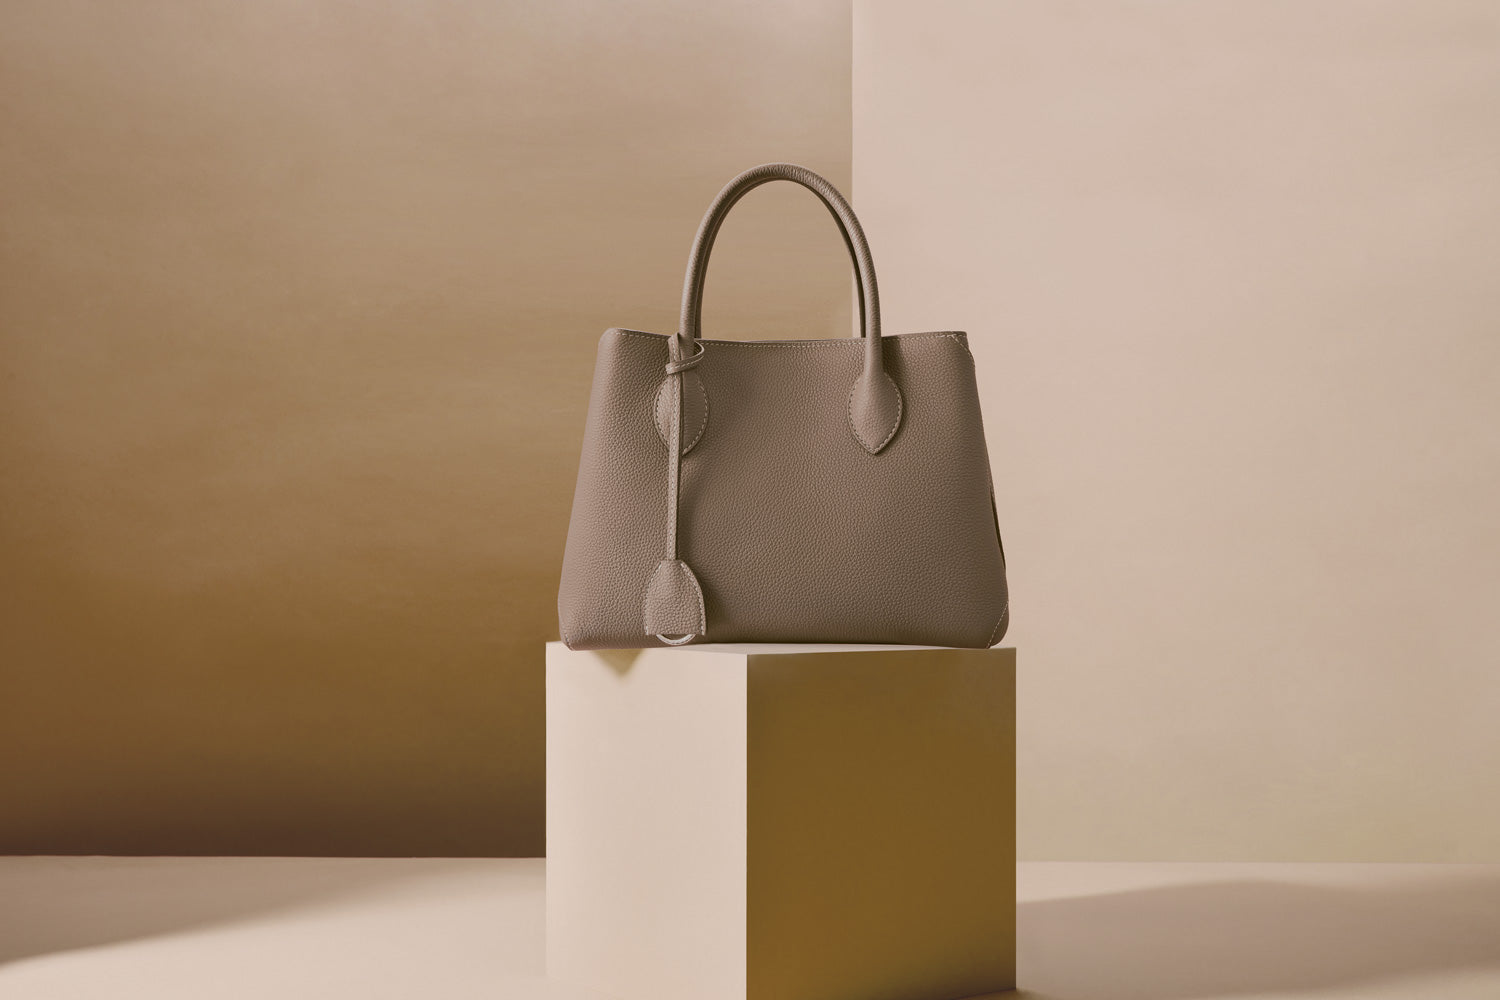 Minimalistická a elegantná taška Mia Tote Bag v nadčasovej farbe Etoupe.